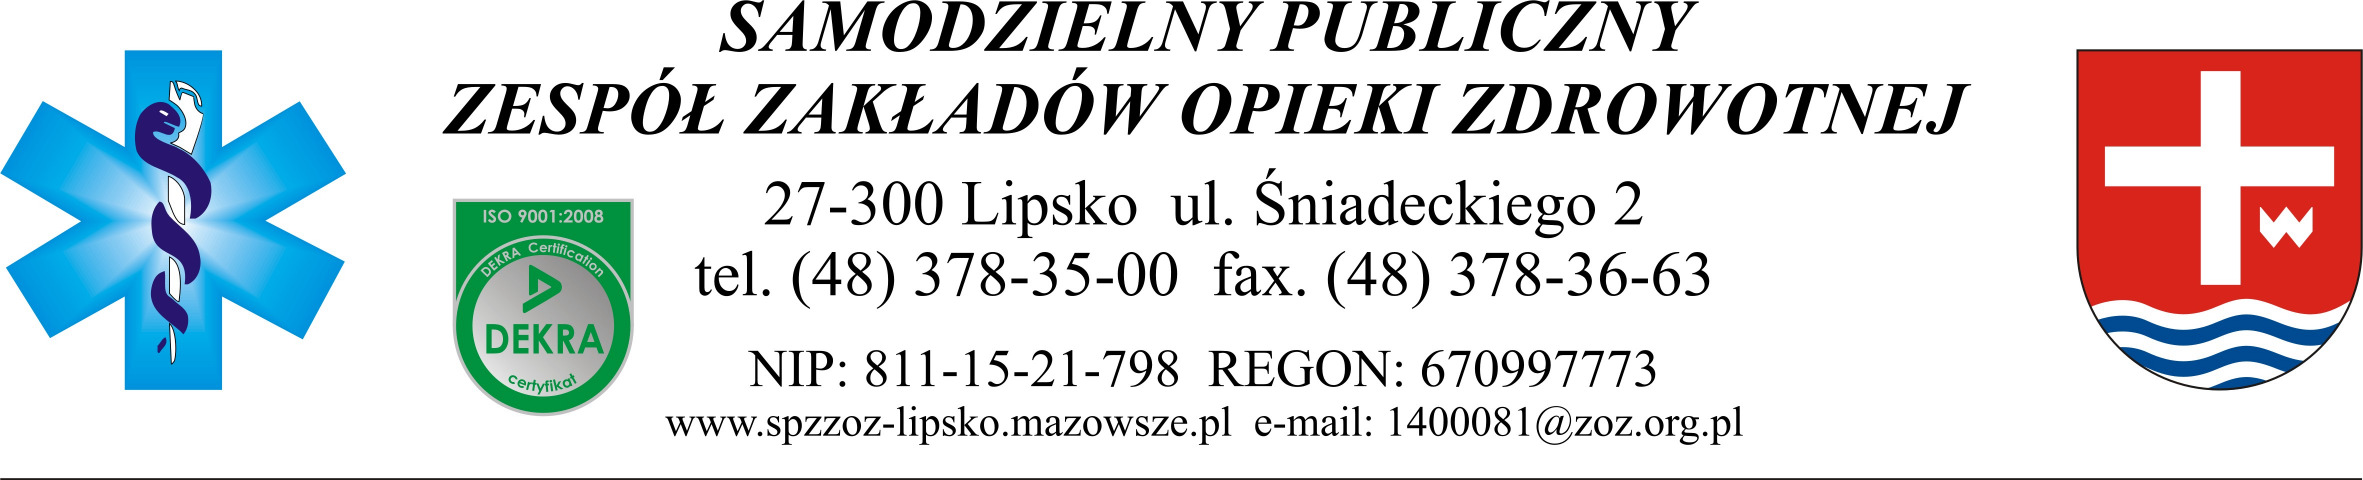 Znak Sprawy: ZP/09/2014 Lipsko dnia 24.07.2014 r. Adres strony internetowej, na której Zamawiający udostępnia Specyfikację Istotnych Warunków Zamówienia: www.spzzoz-lipsko.mazowsze.